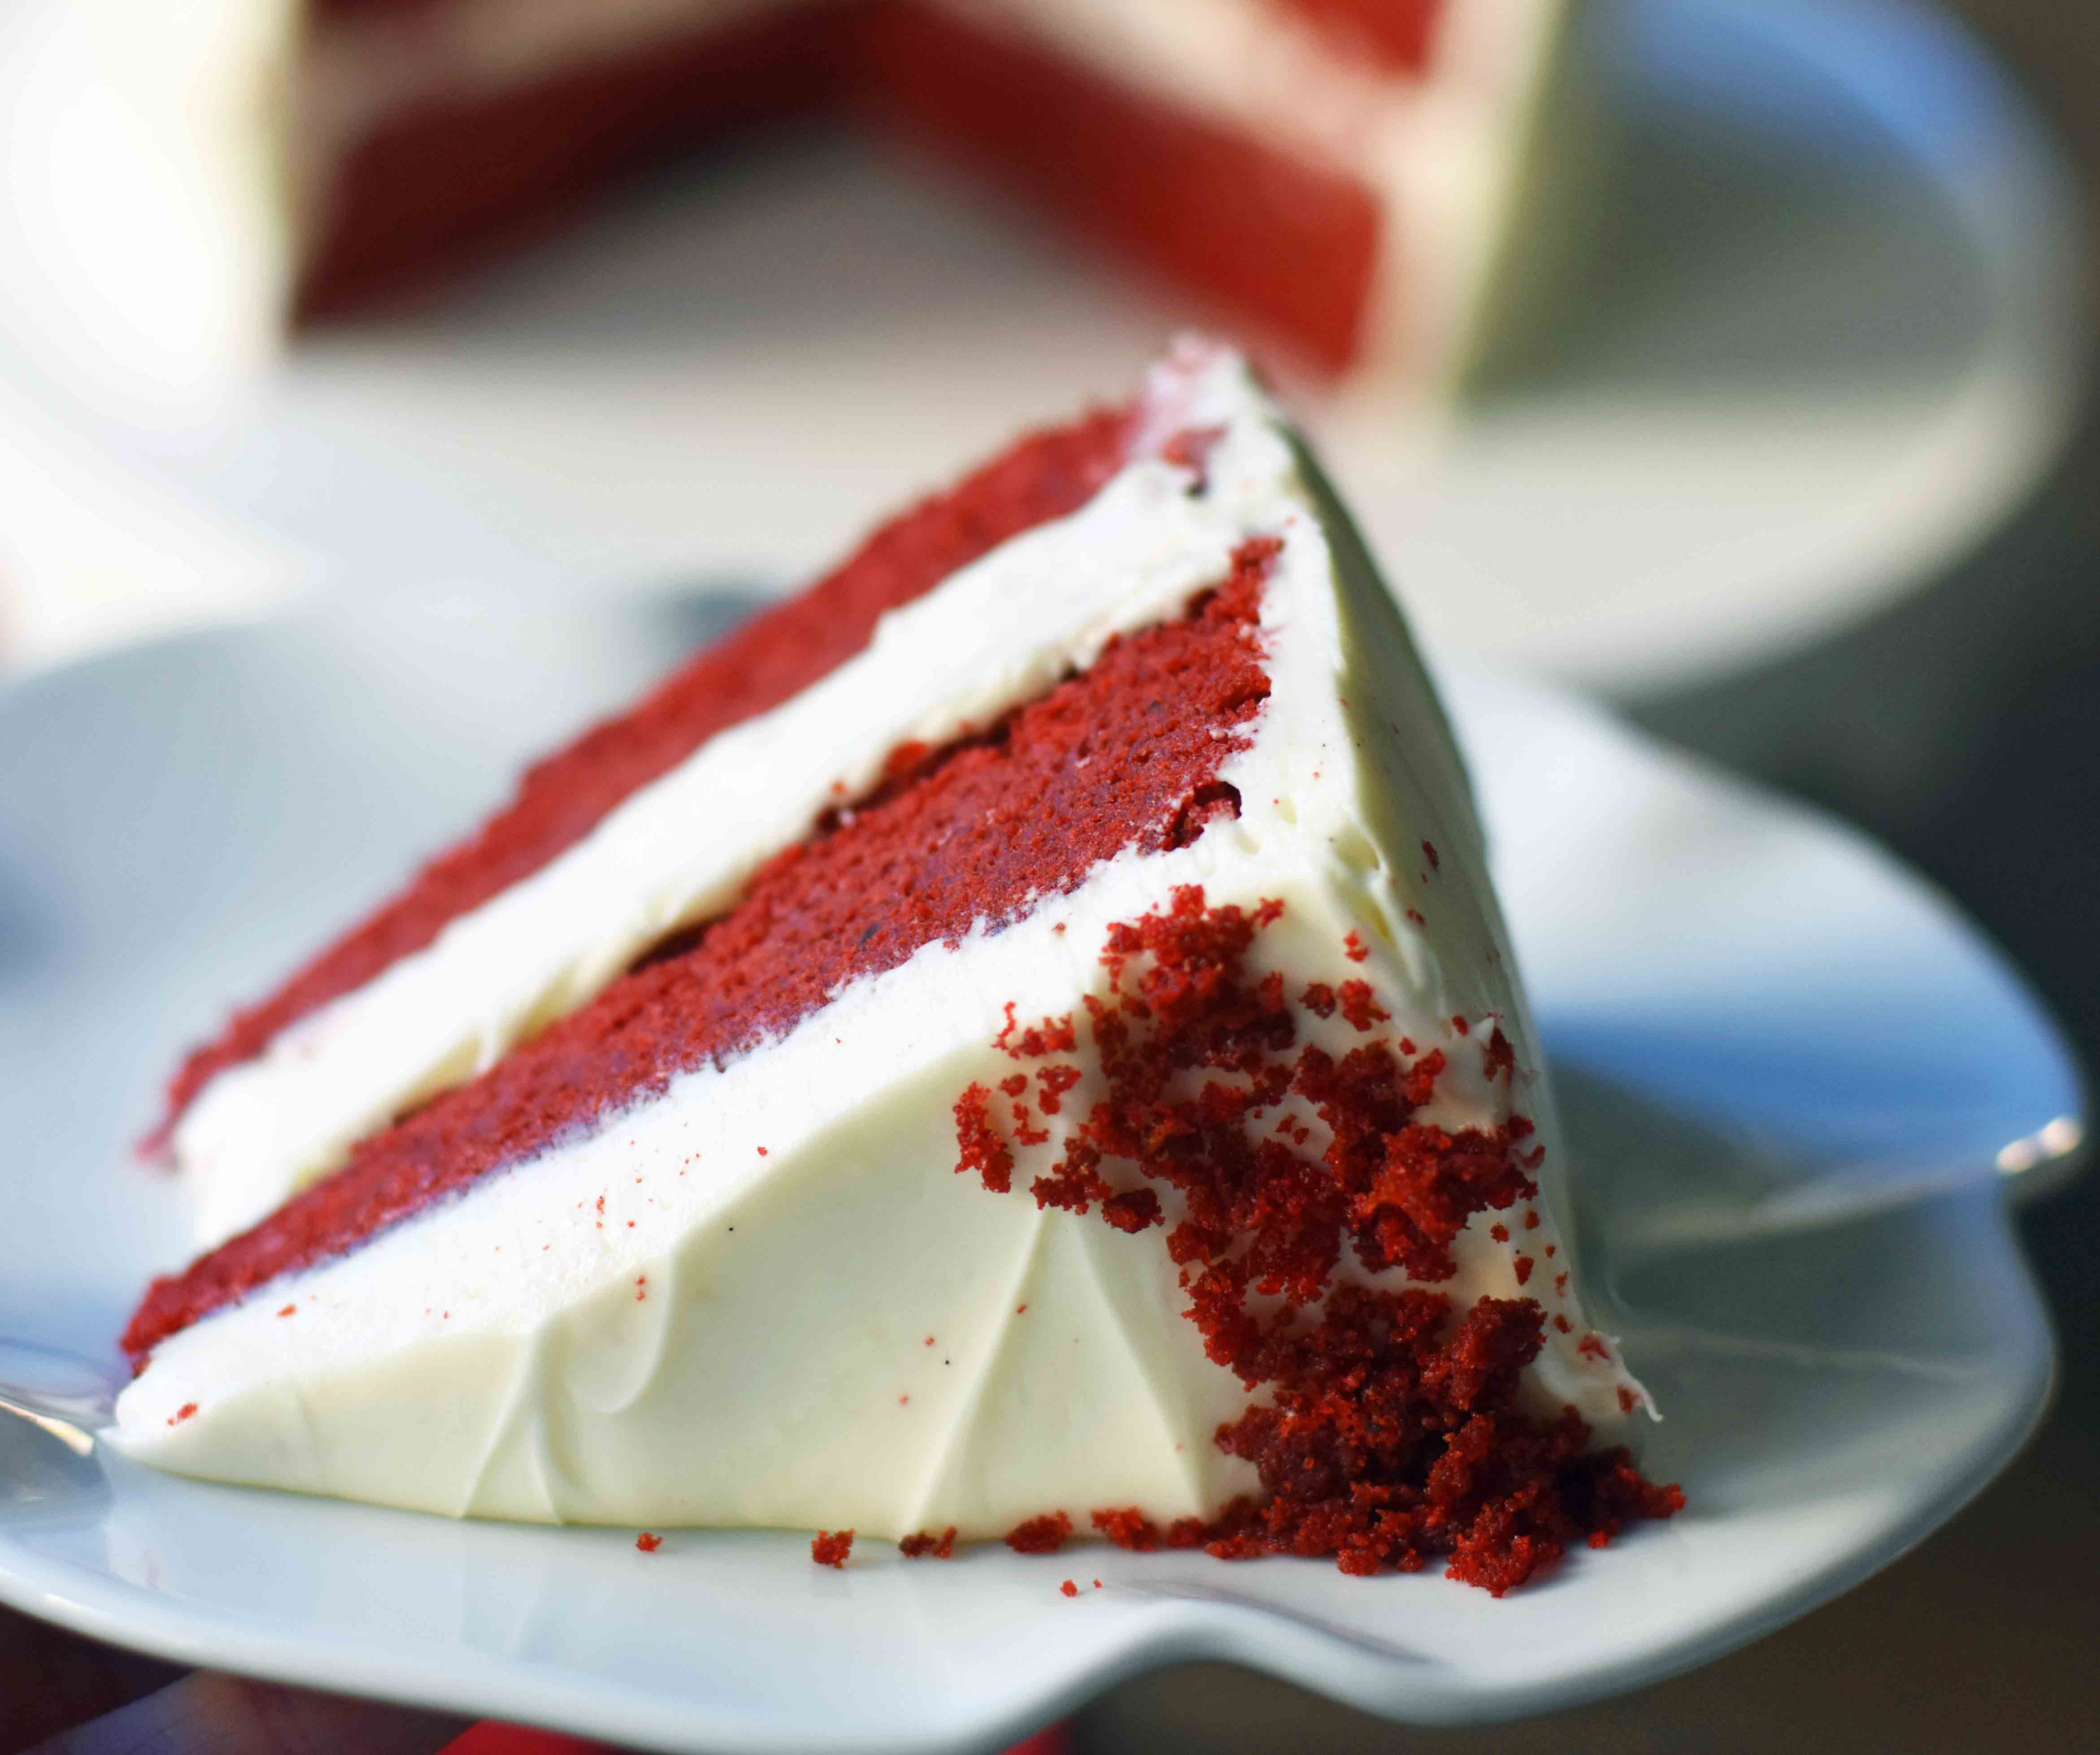 Award Winning Red Velvet Cake Recipe
 red velvet cake recipe from scratch